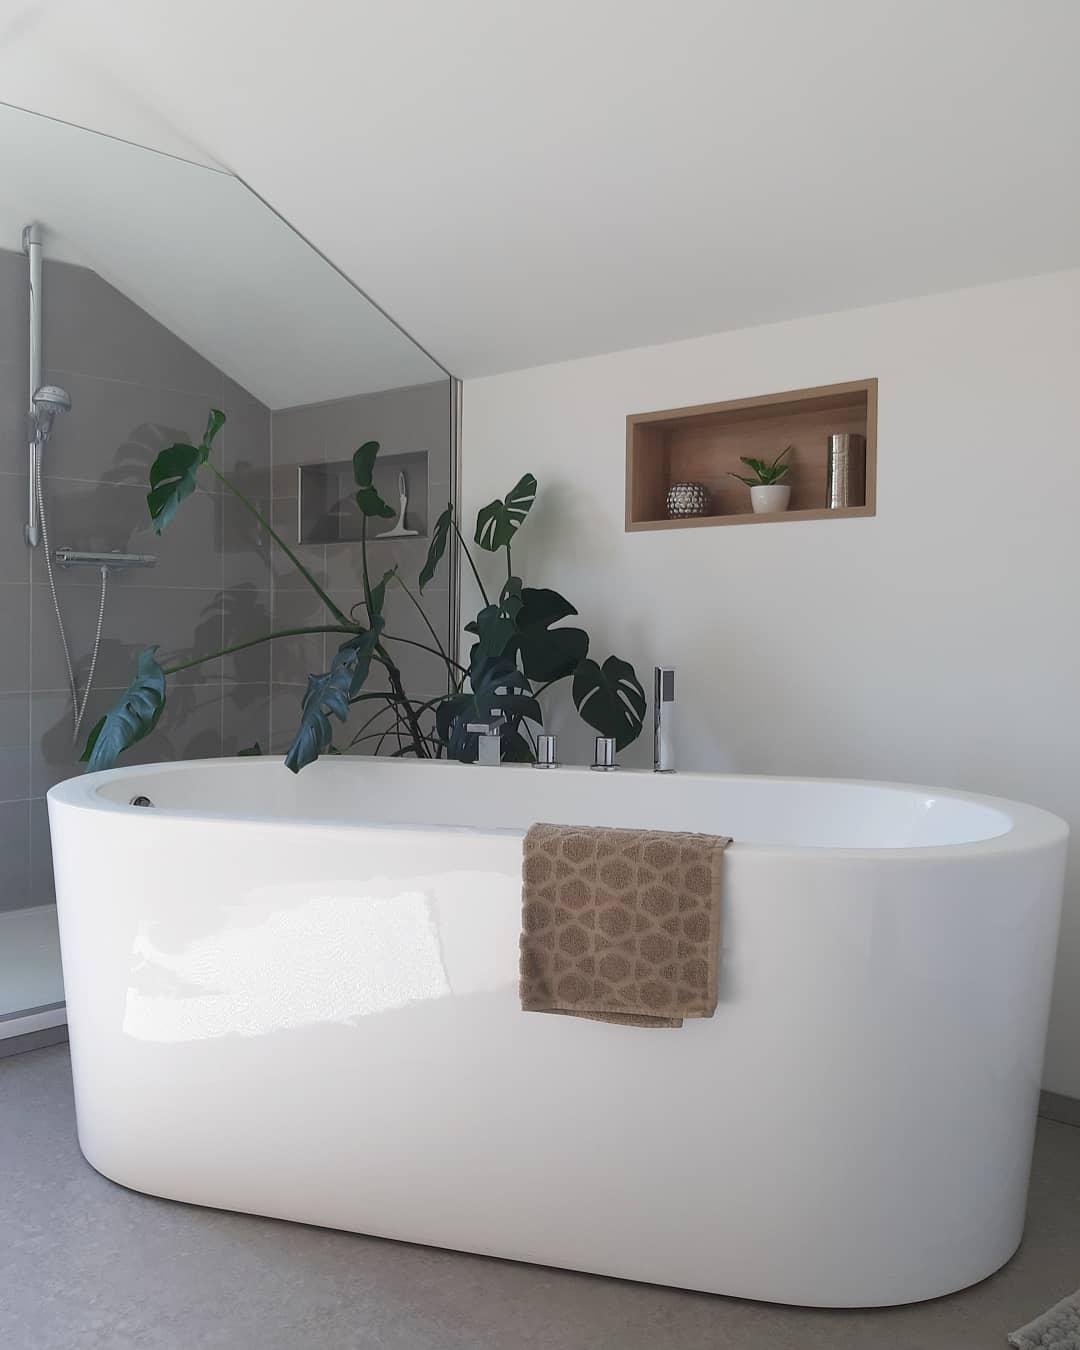 Bathroominspo 💙
#Badezimmer#dusche#badewanne#skandi#fliesen#beton#freistehendebadewanne#monstera#minimalismus